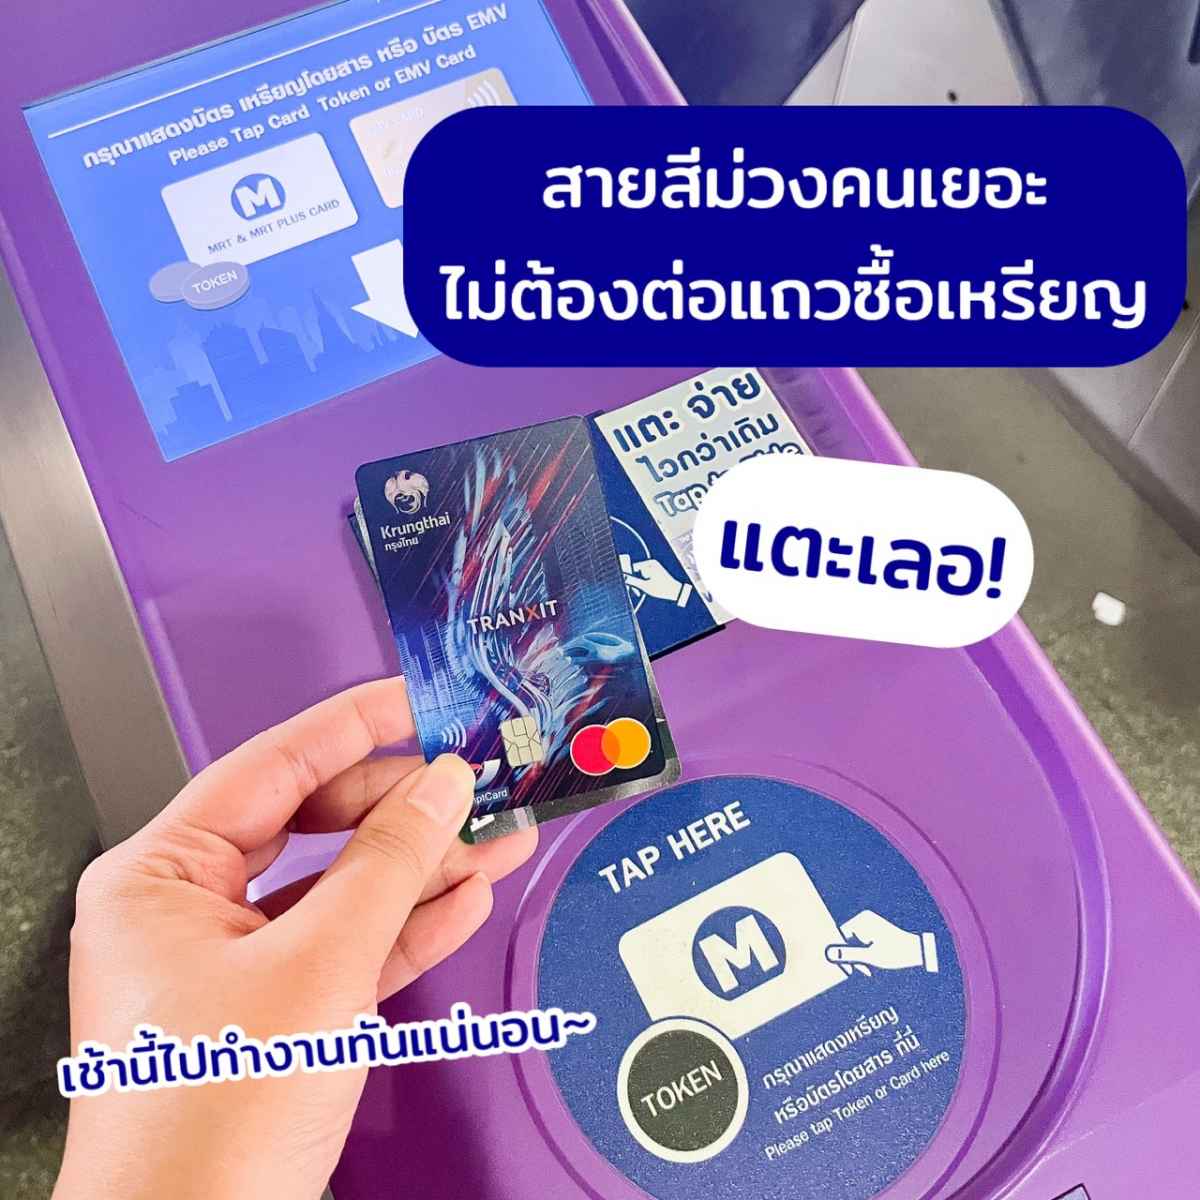 บัตรกรุงไทย